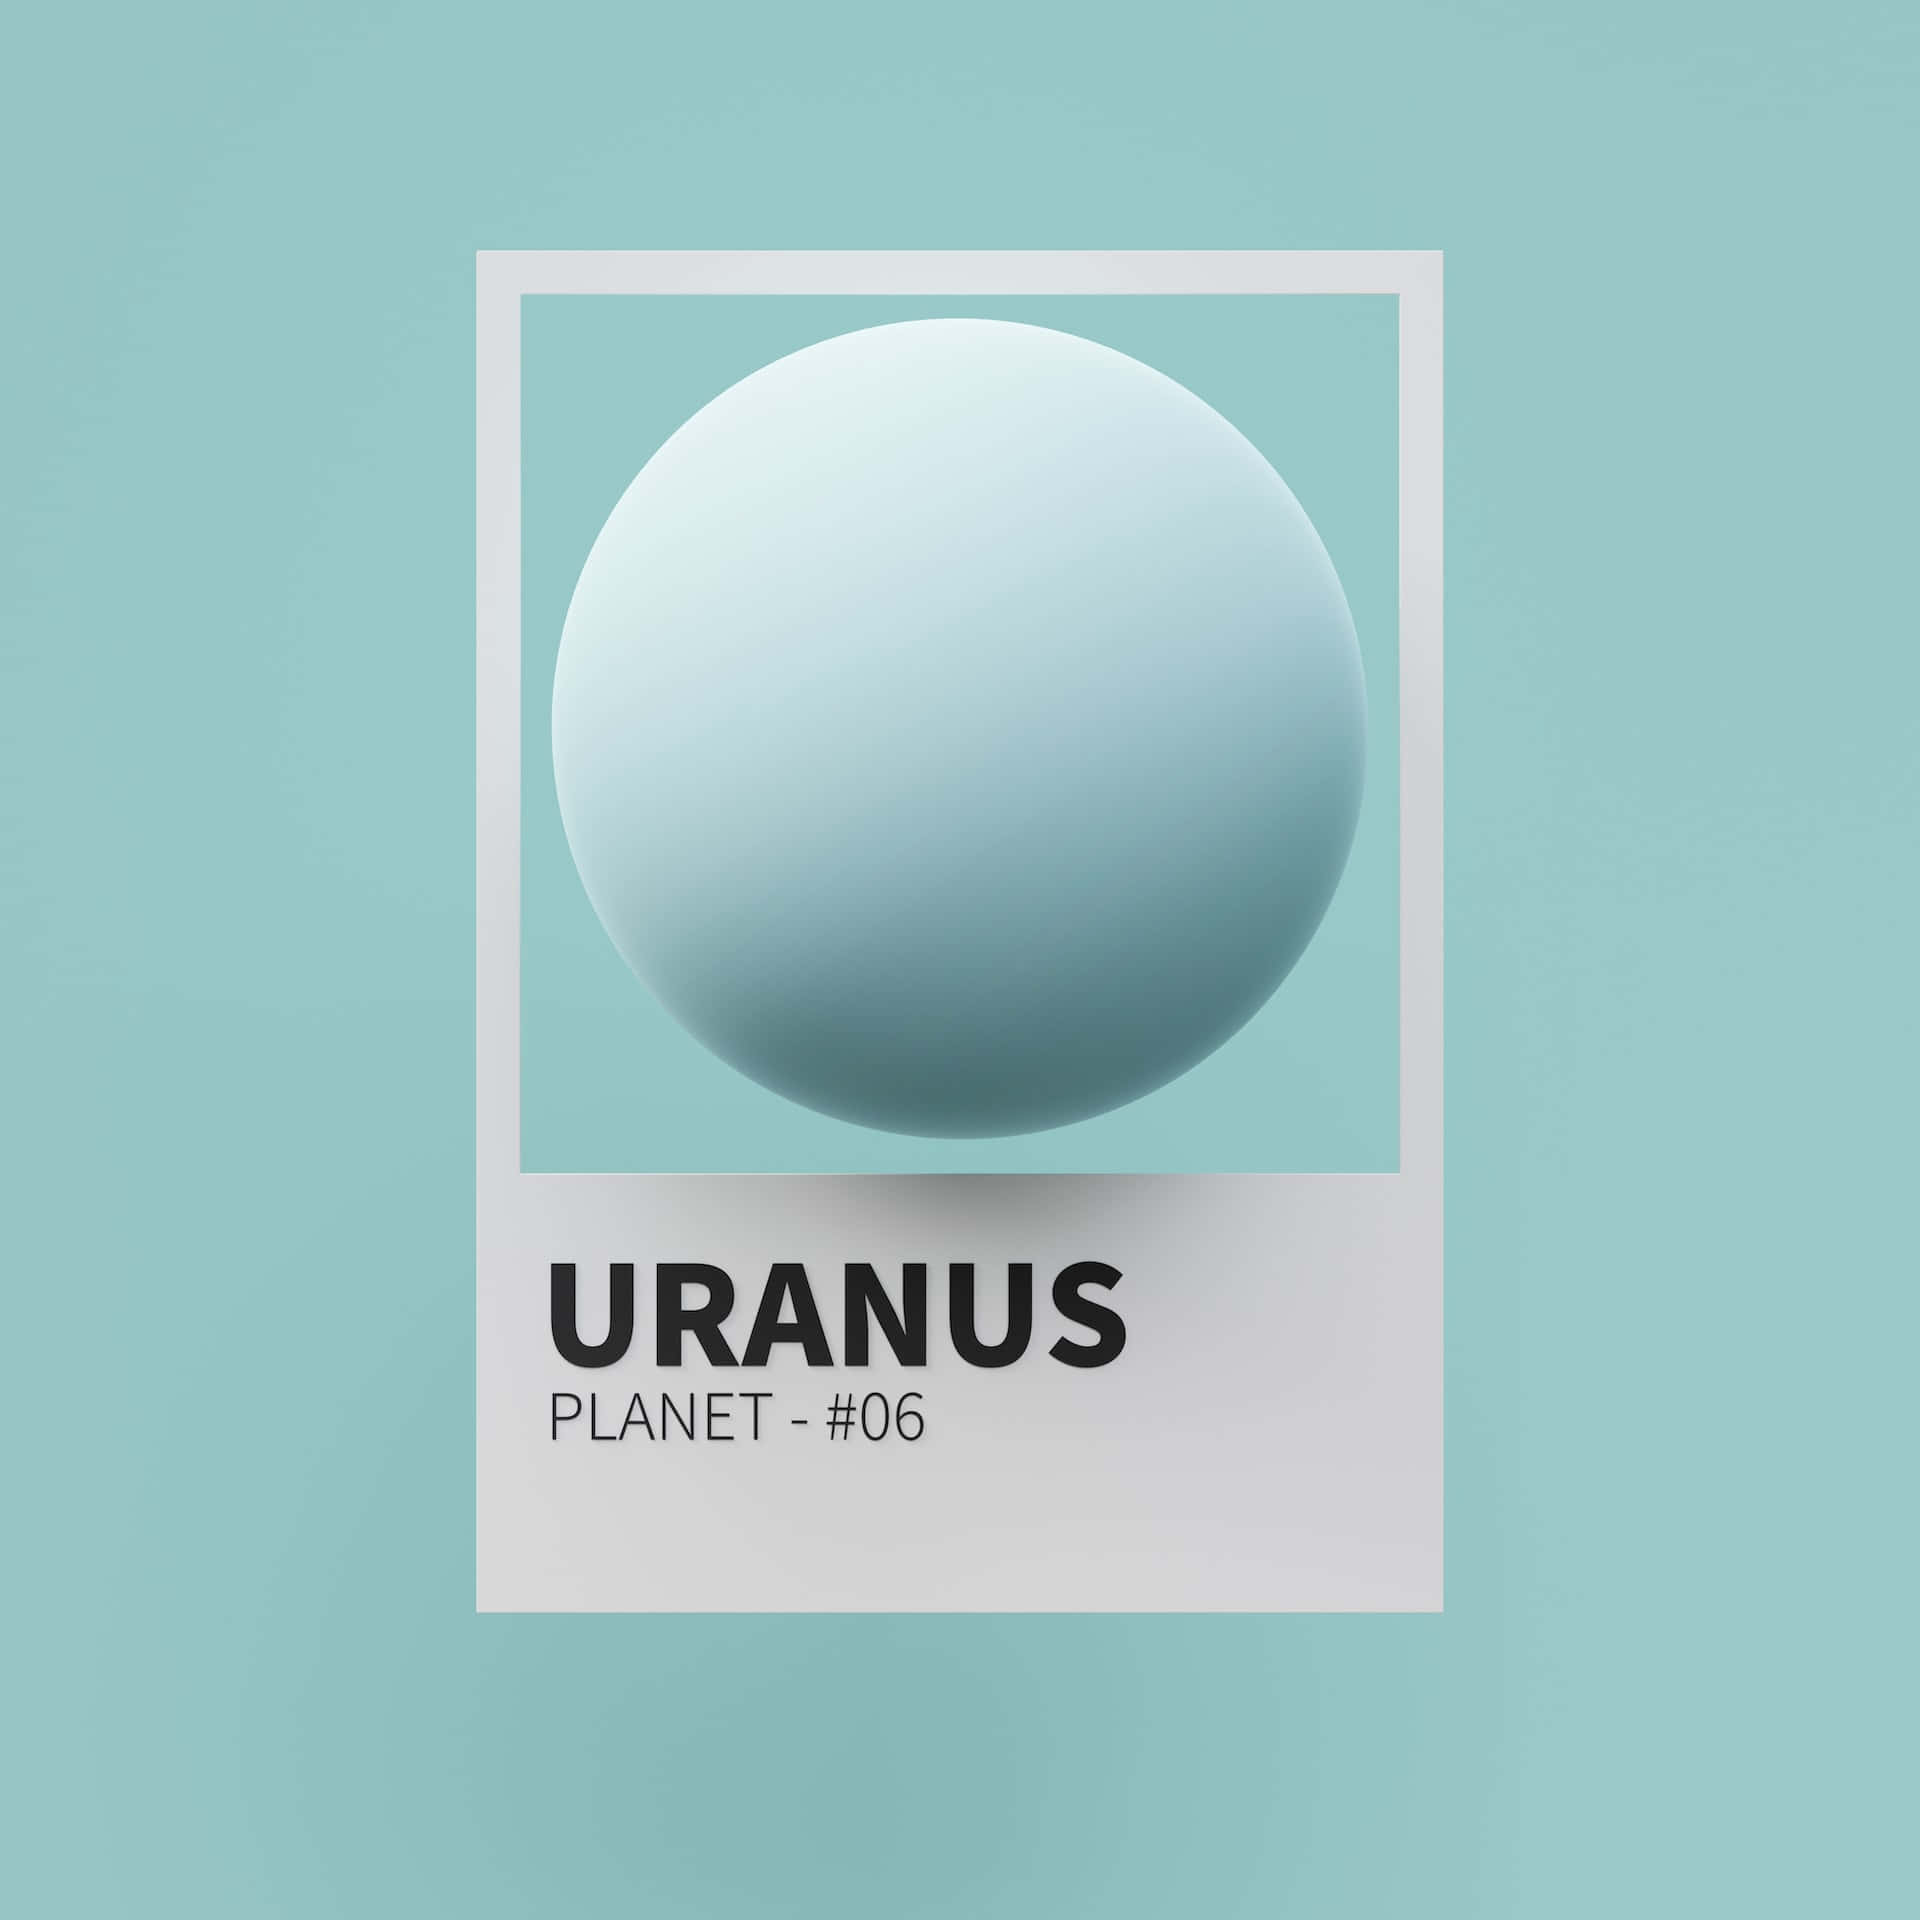 Etfantastisk Billede Af Uranus Og Dens Ringe.